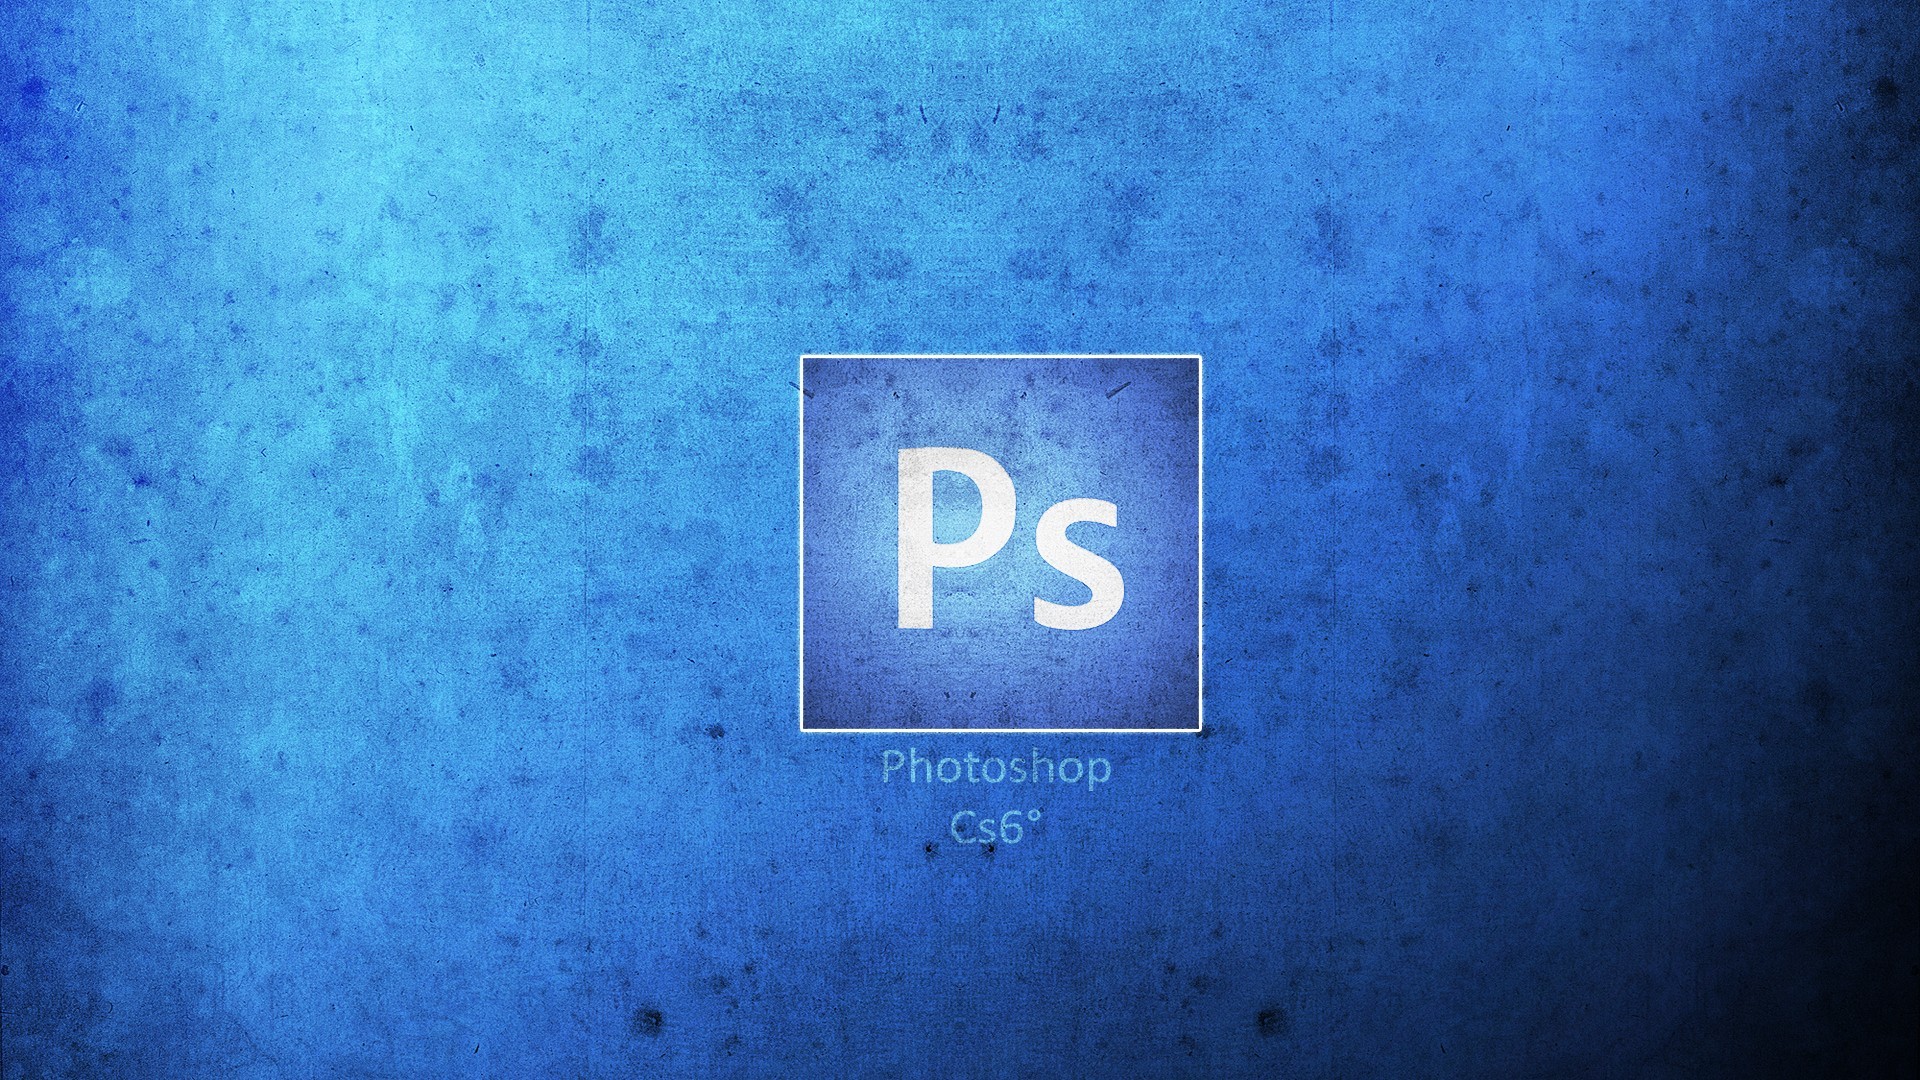 General 1920x1080 minimalism photoshopped logo blue background blue Software